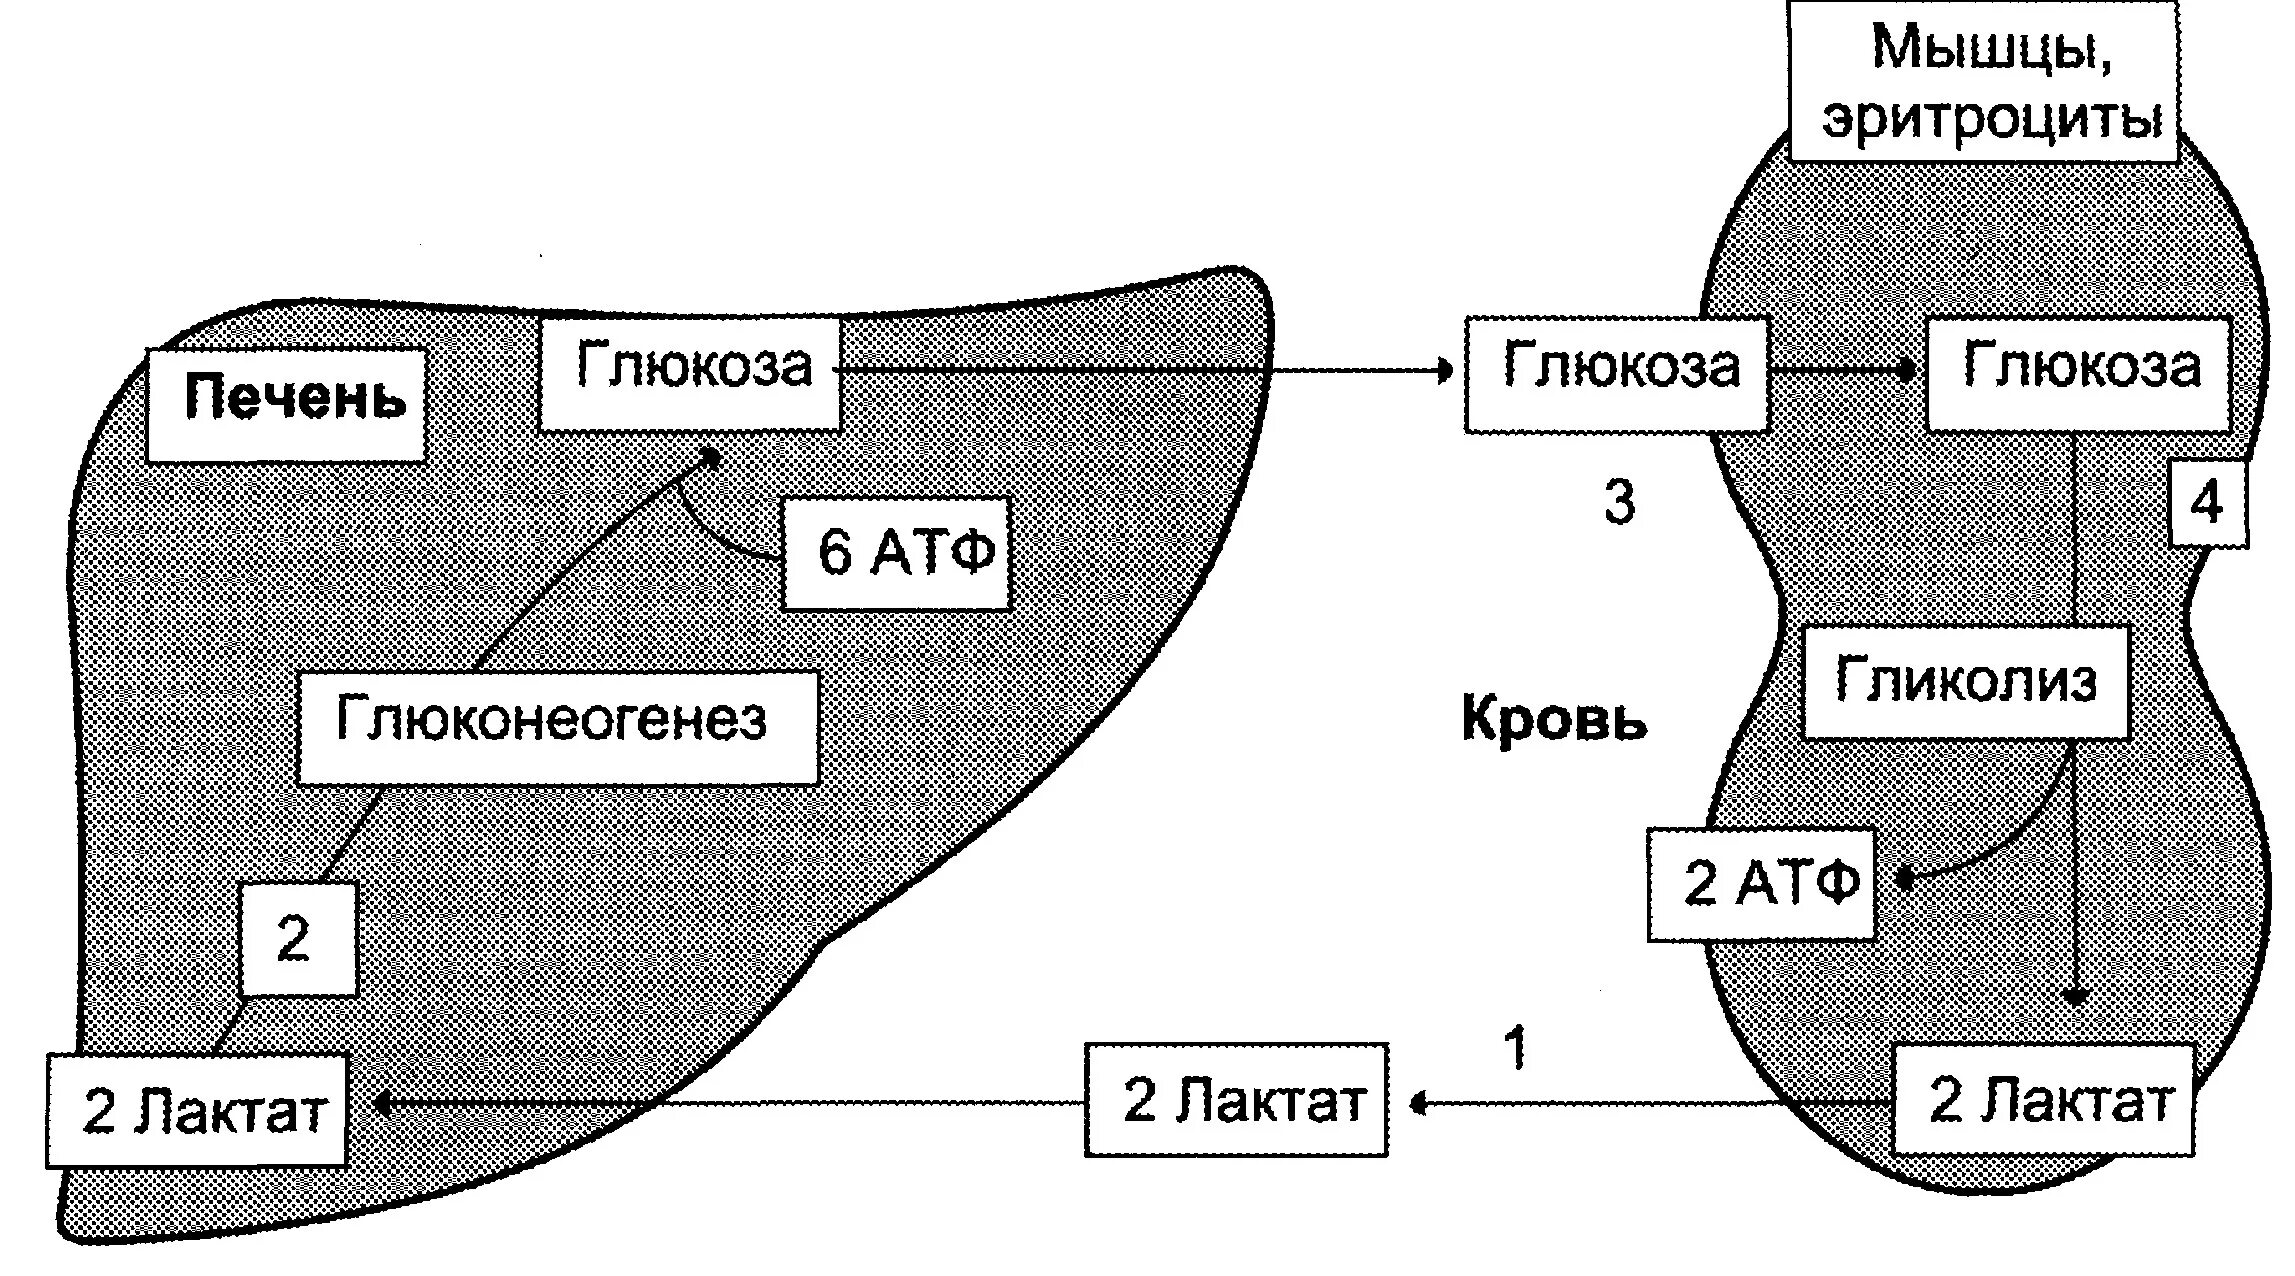 Печень и эритроциты. Синтез Глюкозы из лактата. Цикл кори биохимия лактат. Схема цикла кори биохимия. Схема синтеза Глюкозы из лактата.